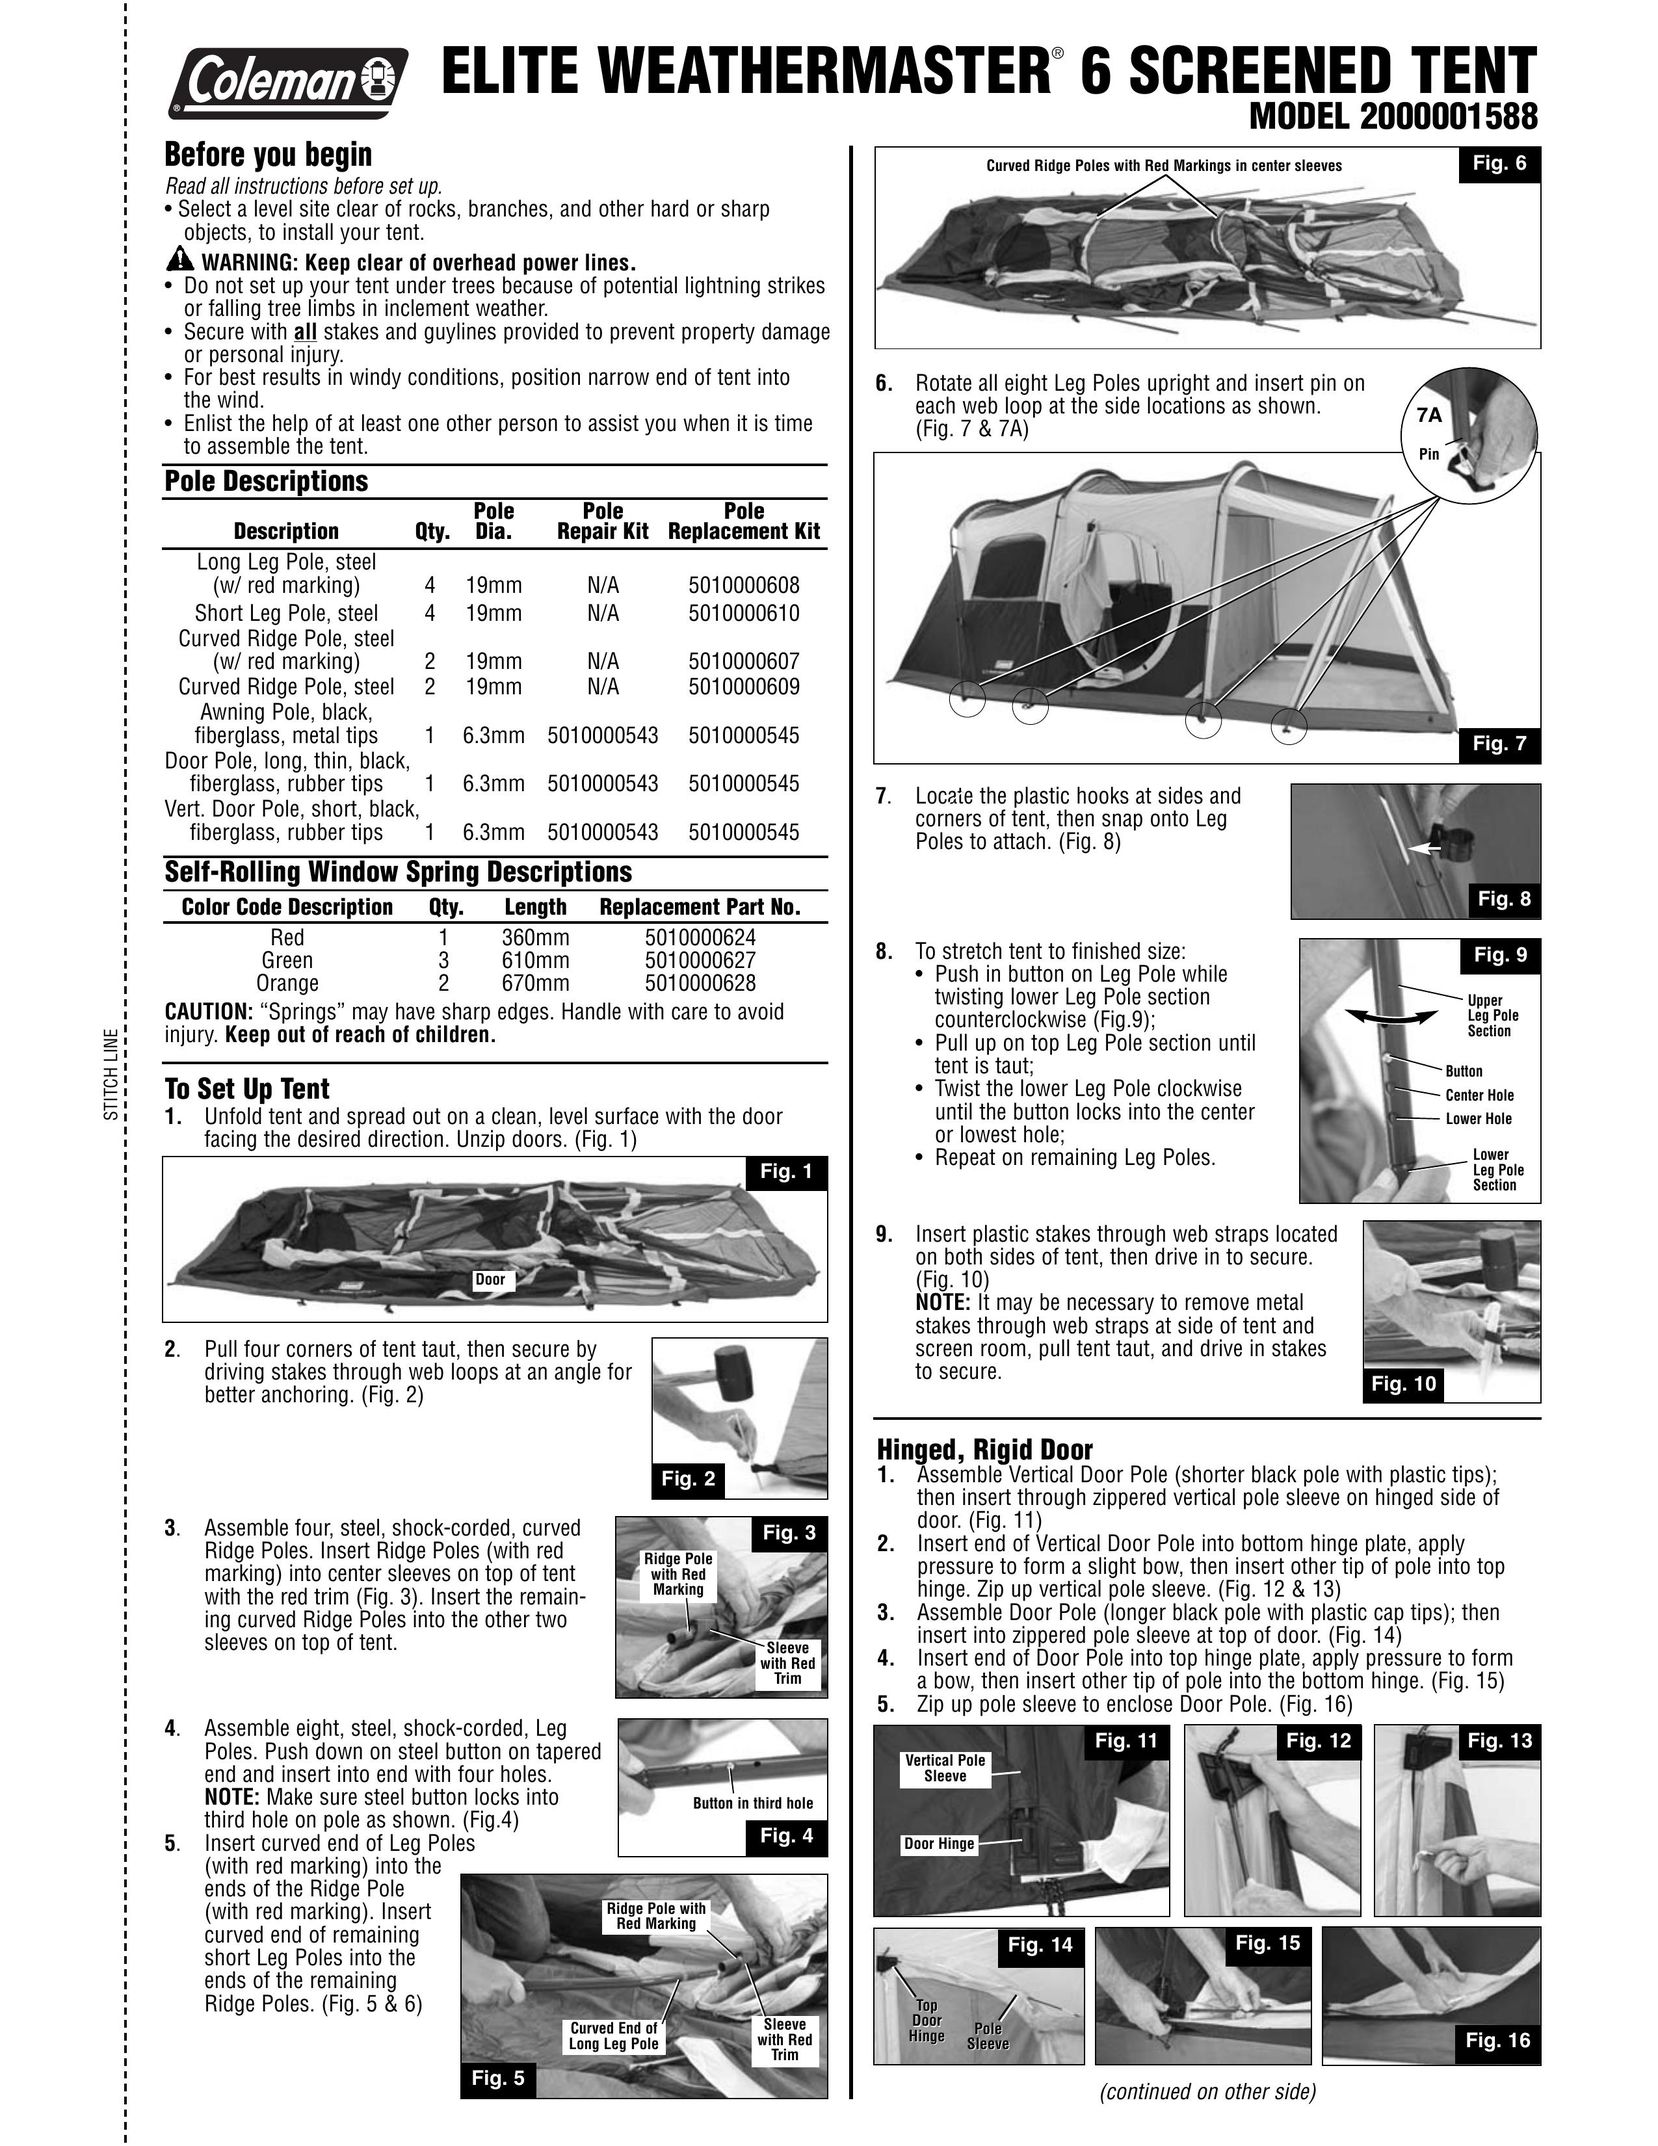 Coleman 2000001588 Tent User Manual